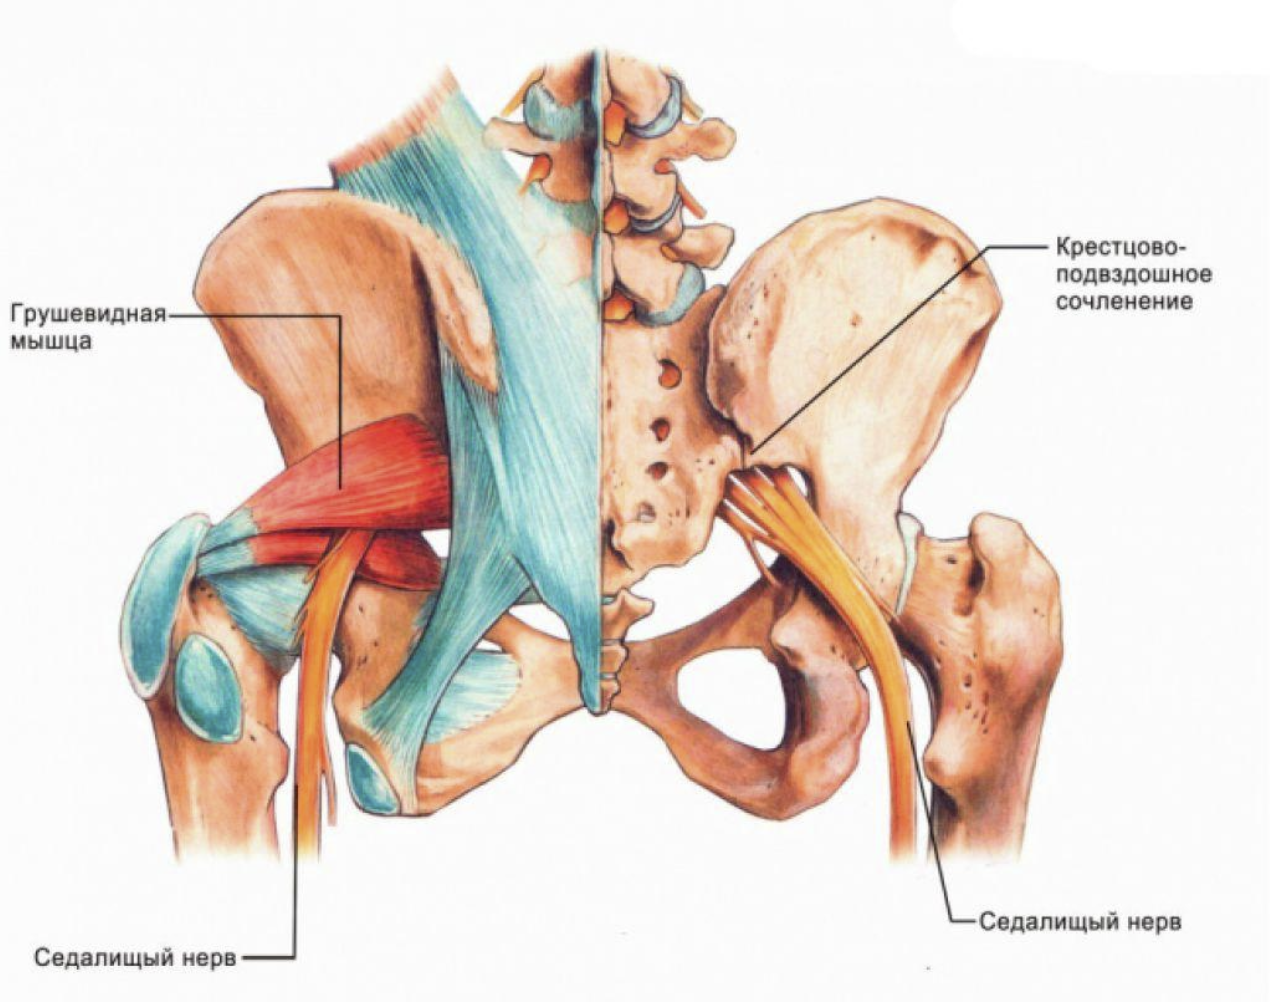 Подвздошная кость лечение. Строение мышц таза седалищный нерв. Строение тазобедренного сустава с мышцами и связками. Тазобедренный сустав анатомия грушевидная мышца.